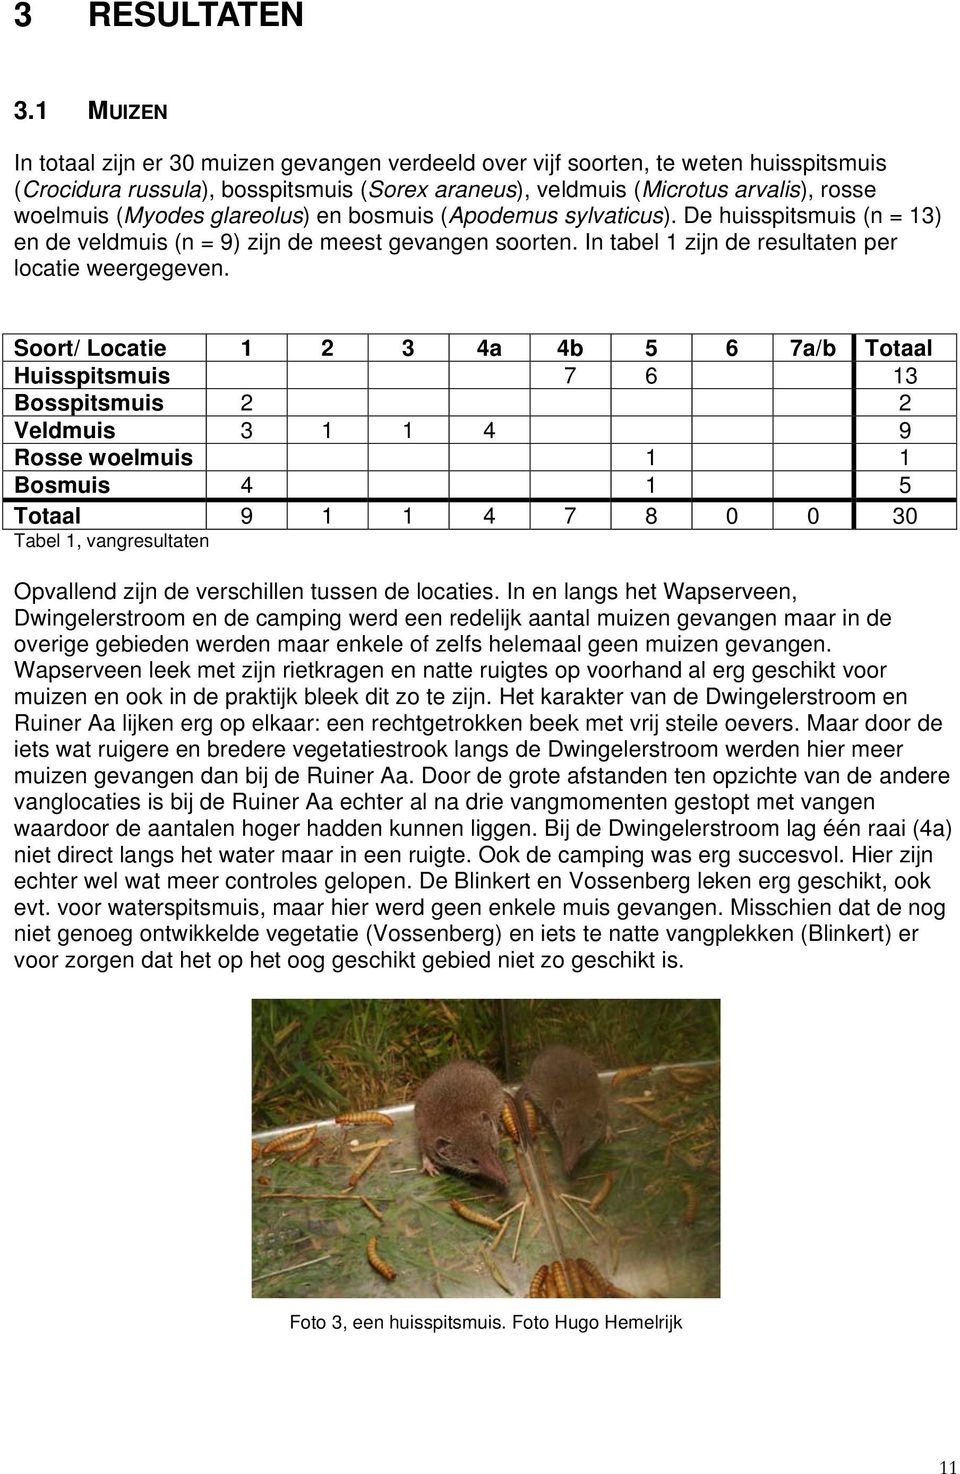 glareolus) en bosmuis (Apodemus sylvaticus). De huisspitsmuis (n = 13) en de veldmuis (n = 9) zijn de meest gevangen soorten. In tabel 1 zijn de resultaten per locatie weergegeven.